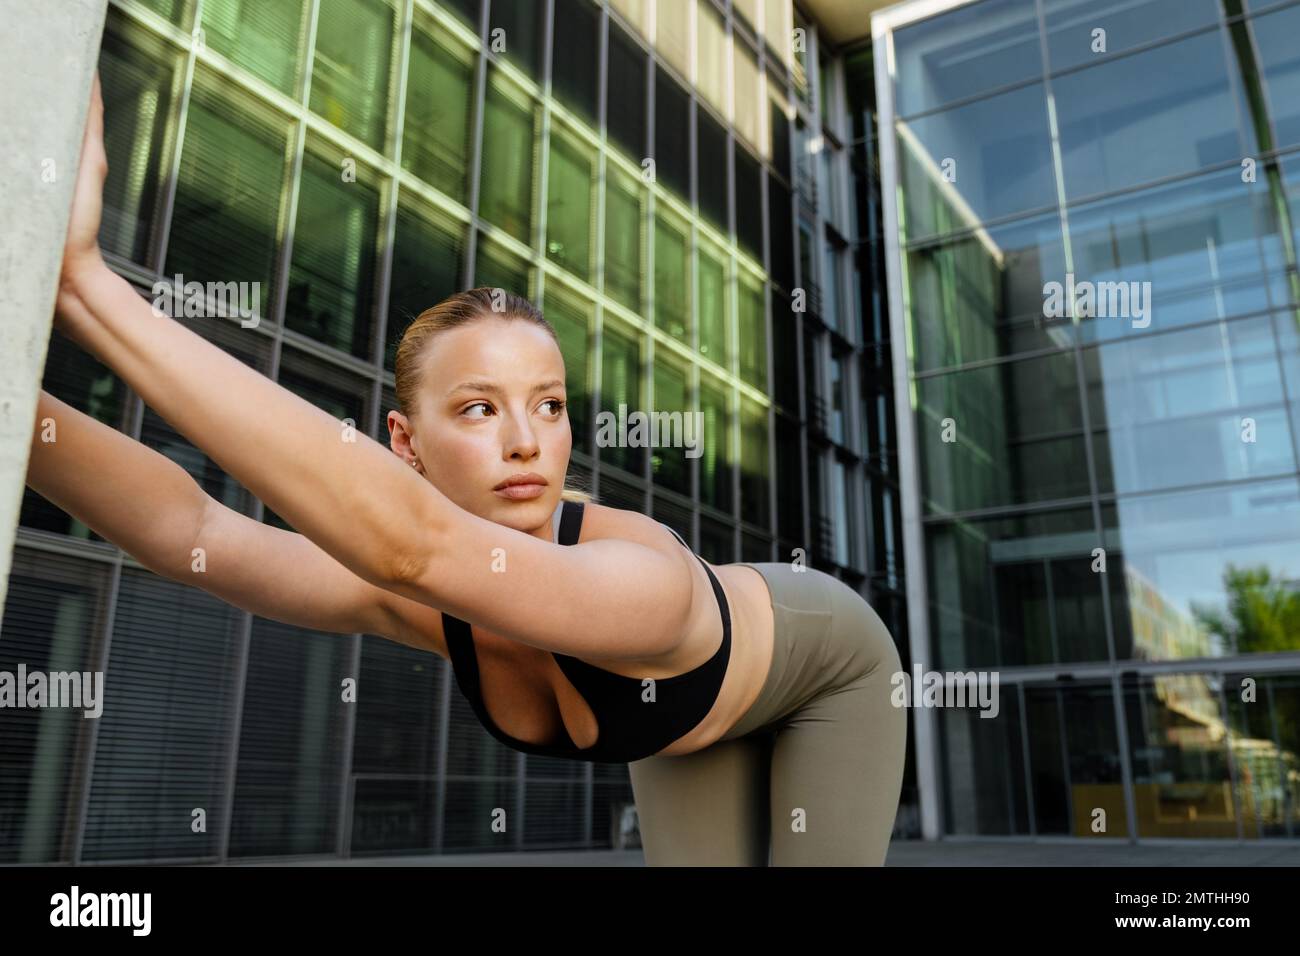 Junge, wunderschöne sportliche Frau, die sich den Rücken ausstreckt und zur Seite schaut, während sie neben einem modernen Gebäude steht Stockfoto